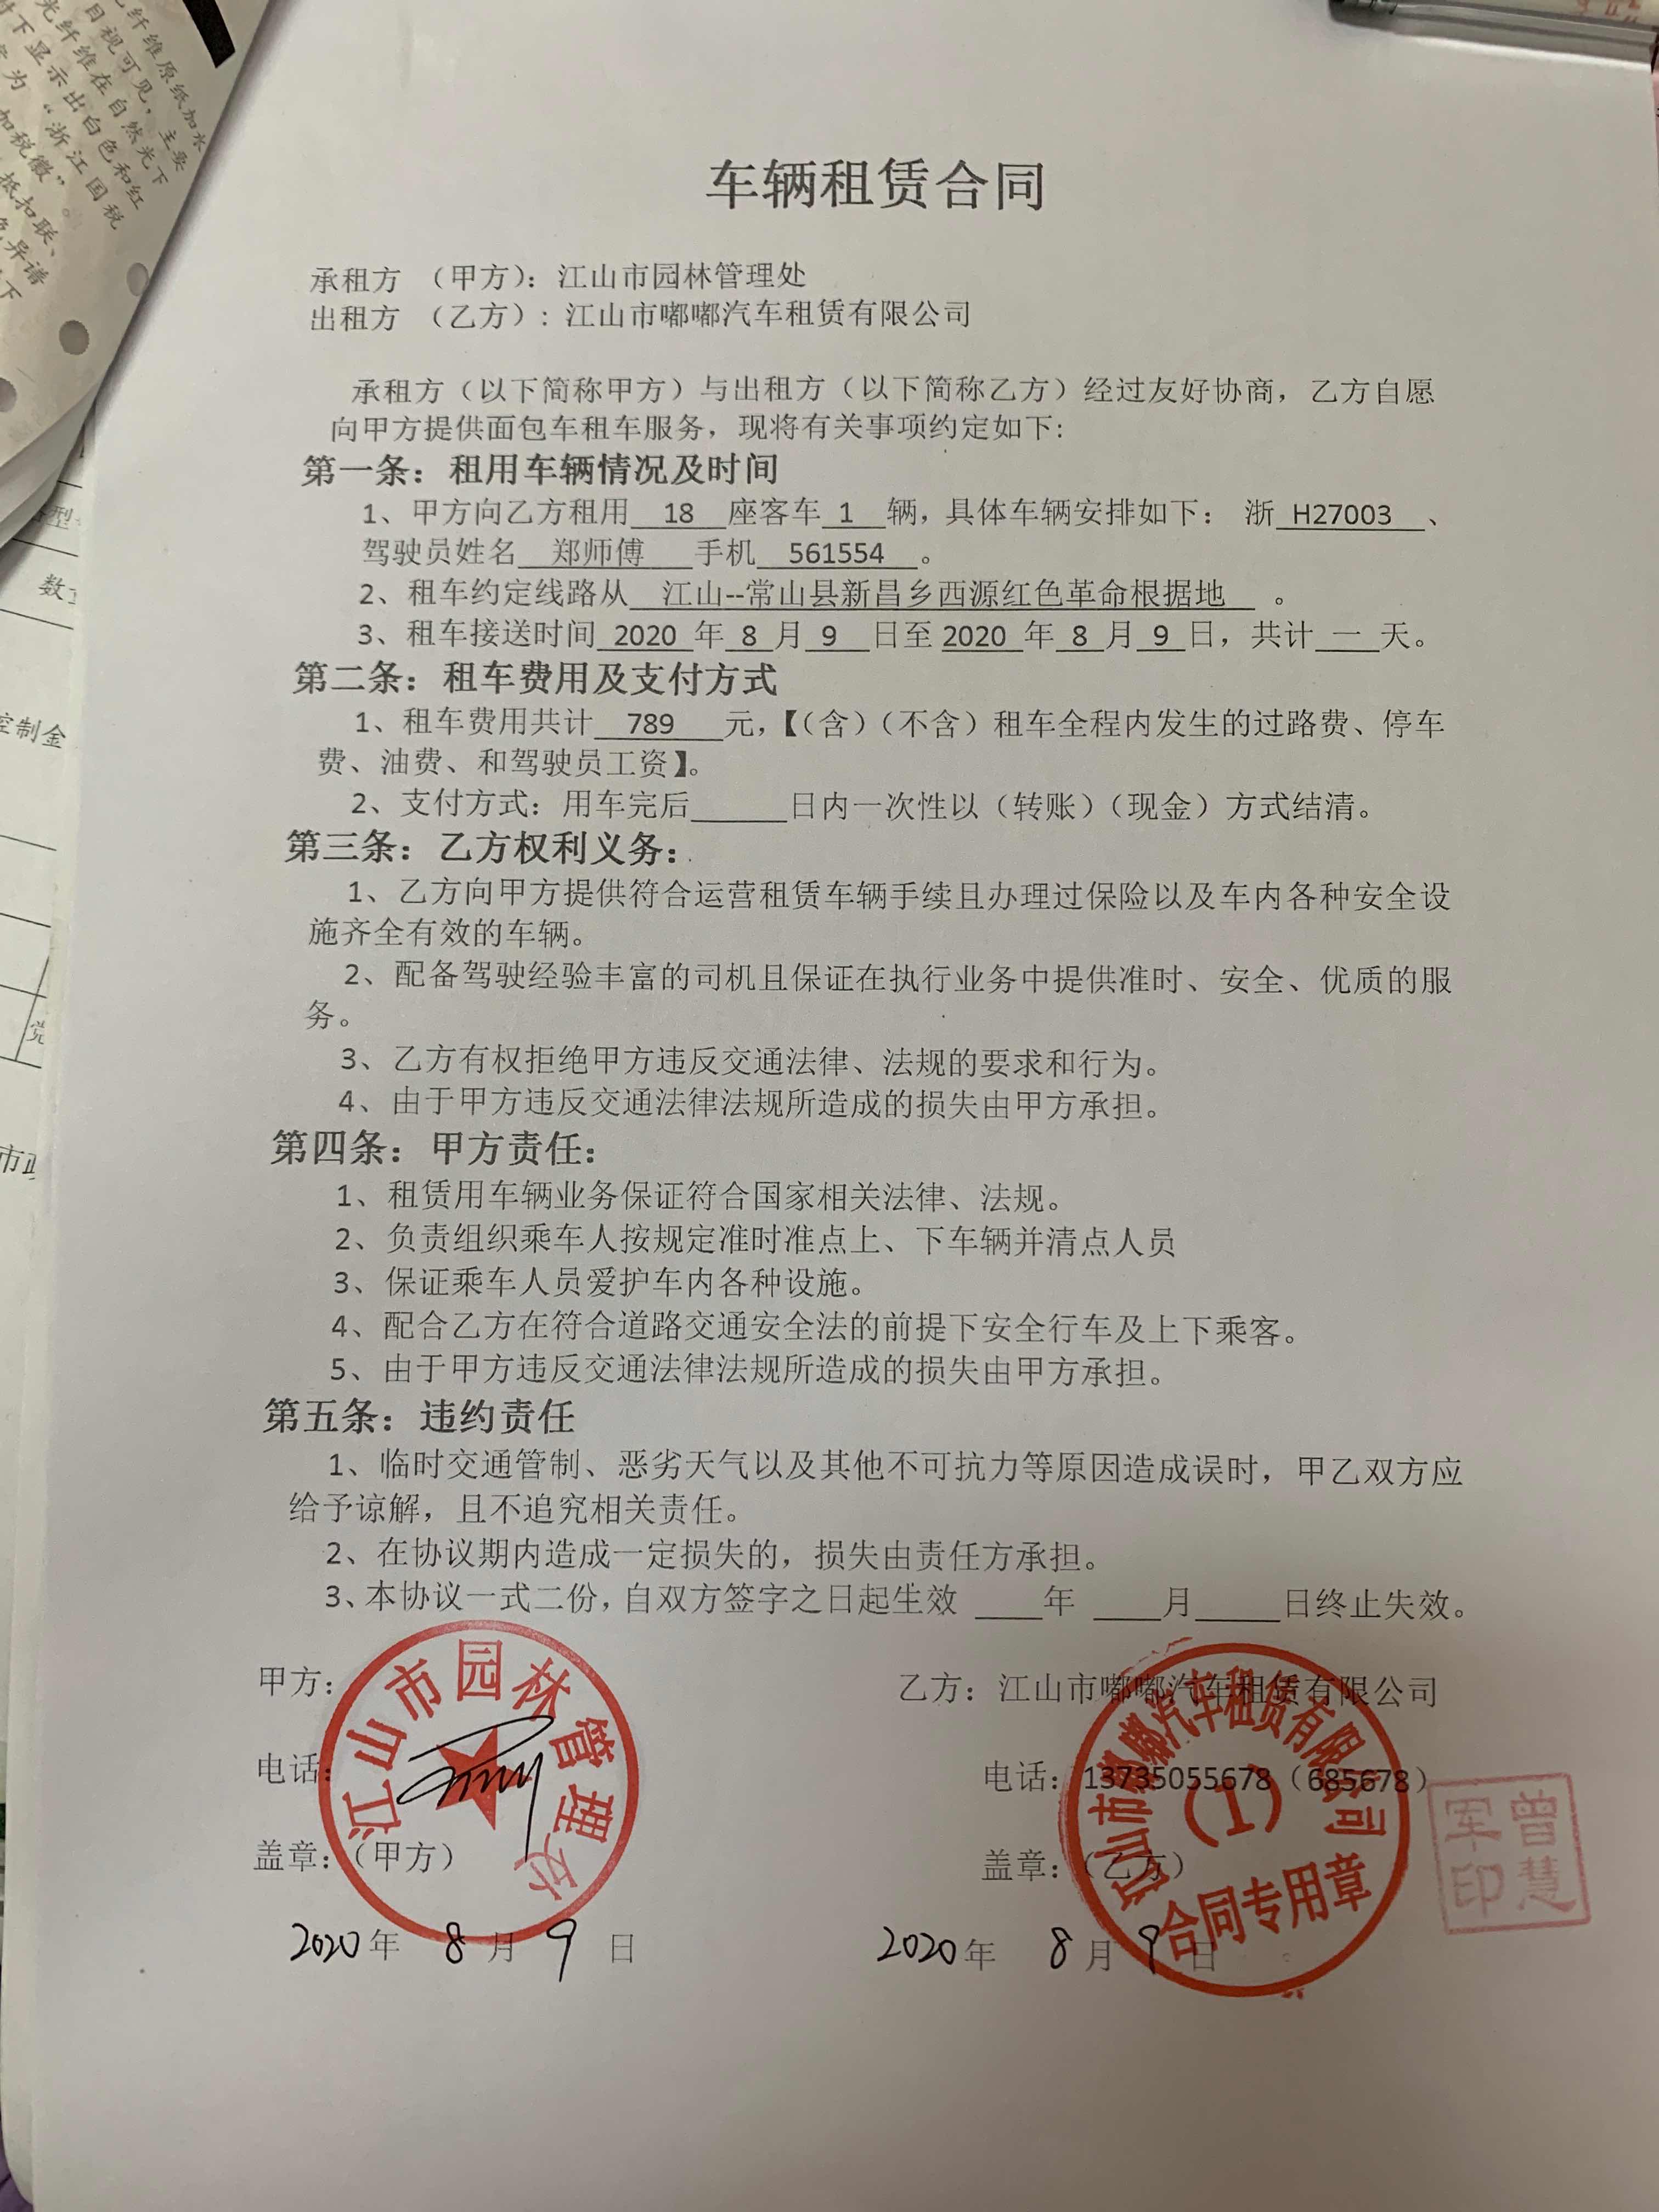 江山市园林管理处关于车辆租赁服务的合同公告1147206006020200002